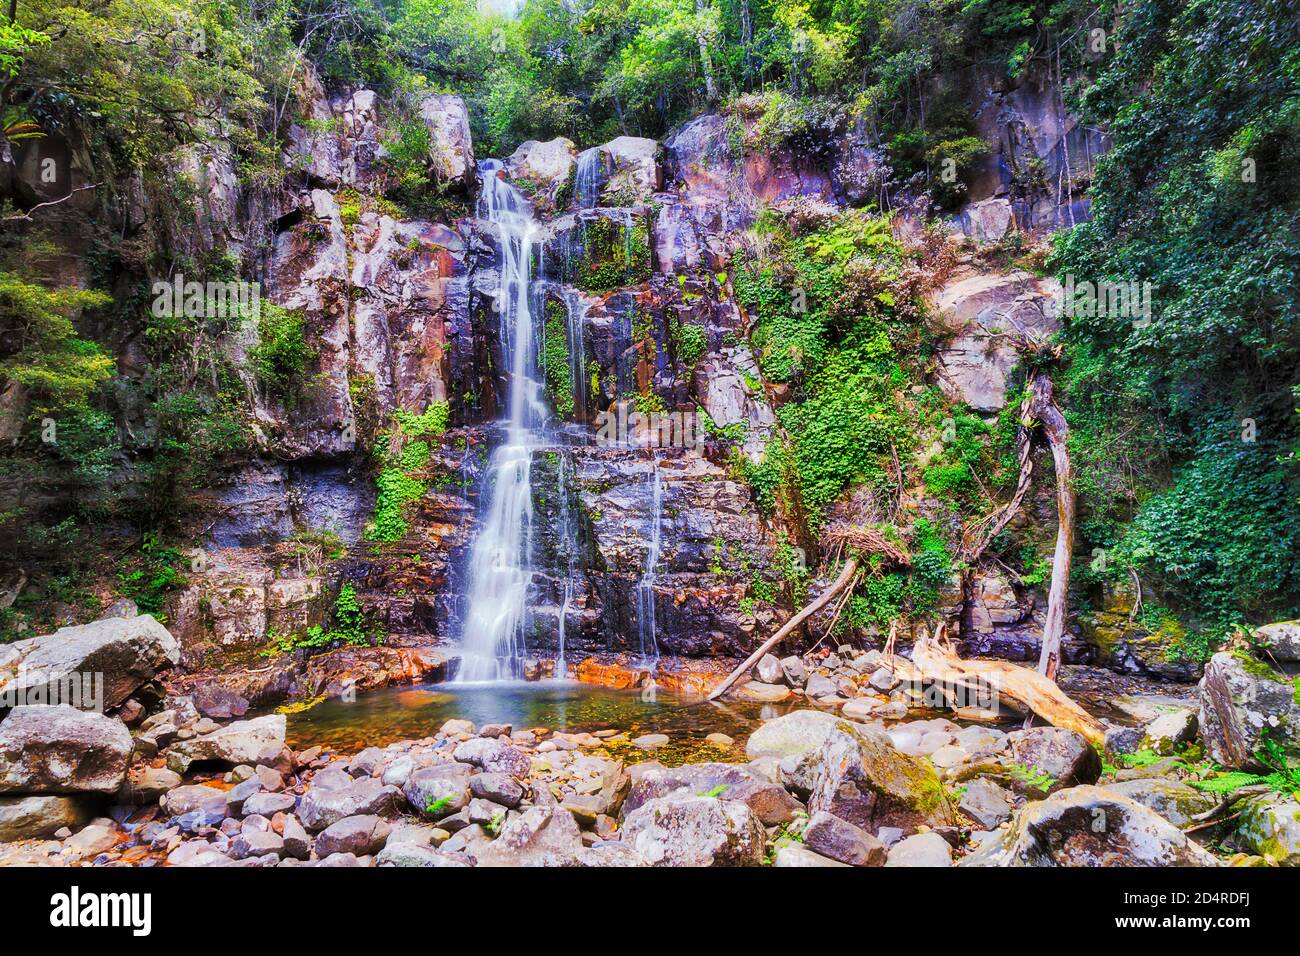 Les chutes pittoresques de Minnamurra dans la forêt tropicale du parc national s'écoulent vers les rochers dans les jungles à feuilles persistantes. Banque D'Images